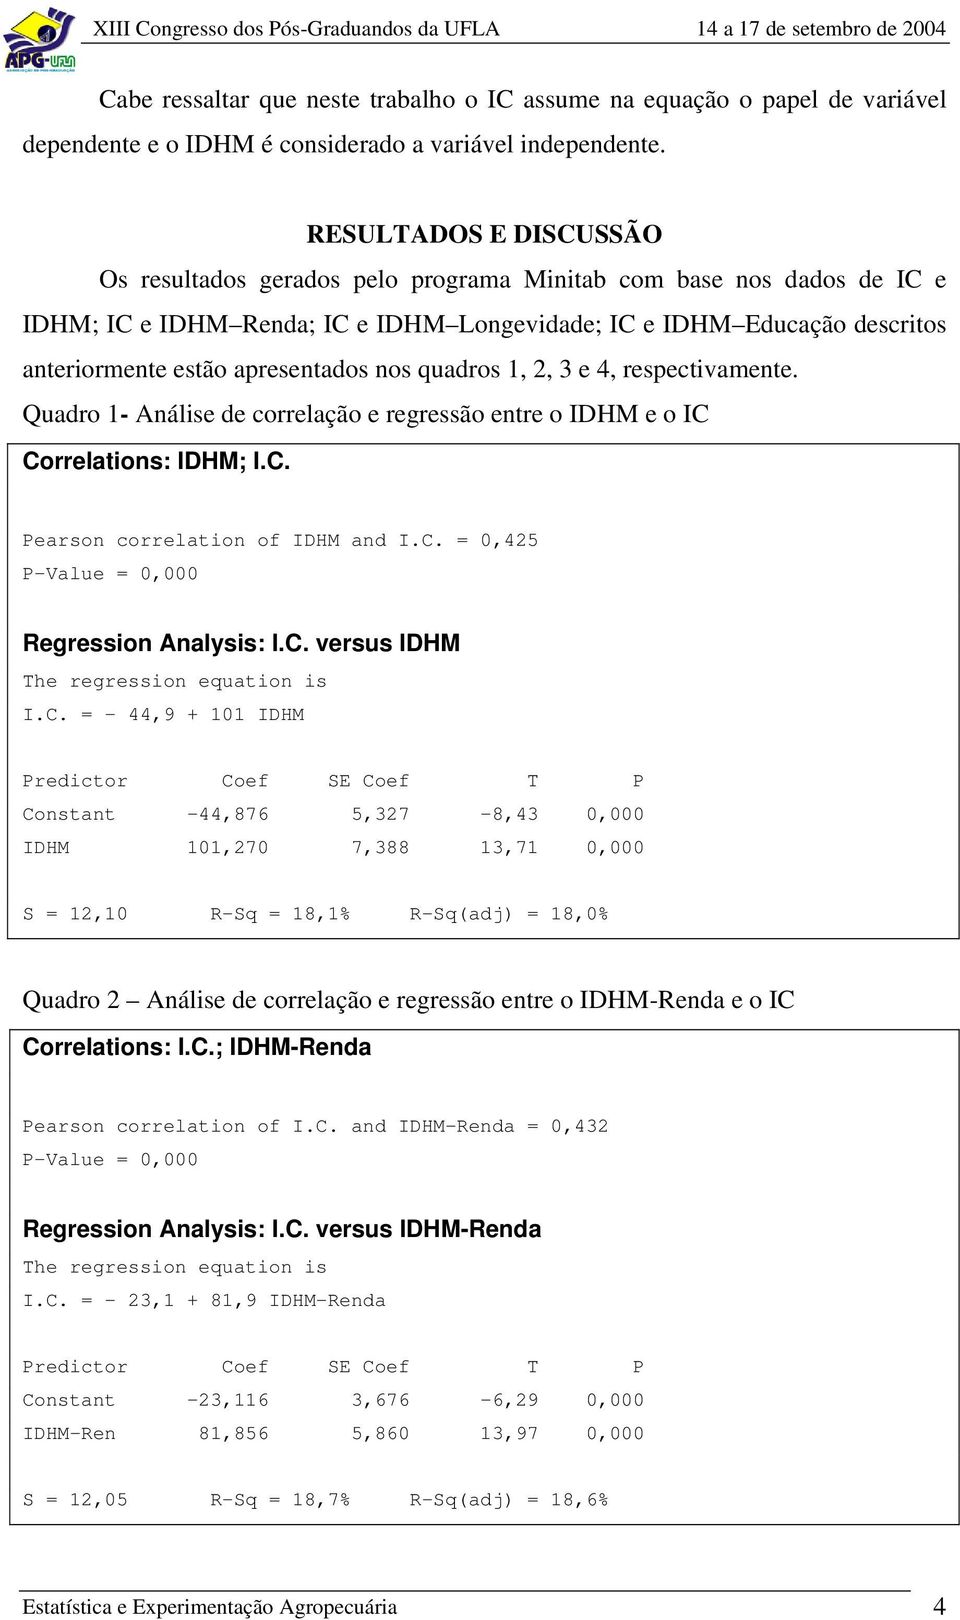 apresentados nos quadros 1, 2, 3 e 4, respectivamente. Quadro 1- Análise de correlação e regressão entre o IDHM e o IC Correlations: IDHM; I.C. Pearson correlation of IDHM and I.C. = 0,425 Regression Analysis: I.